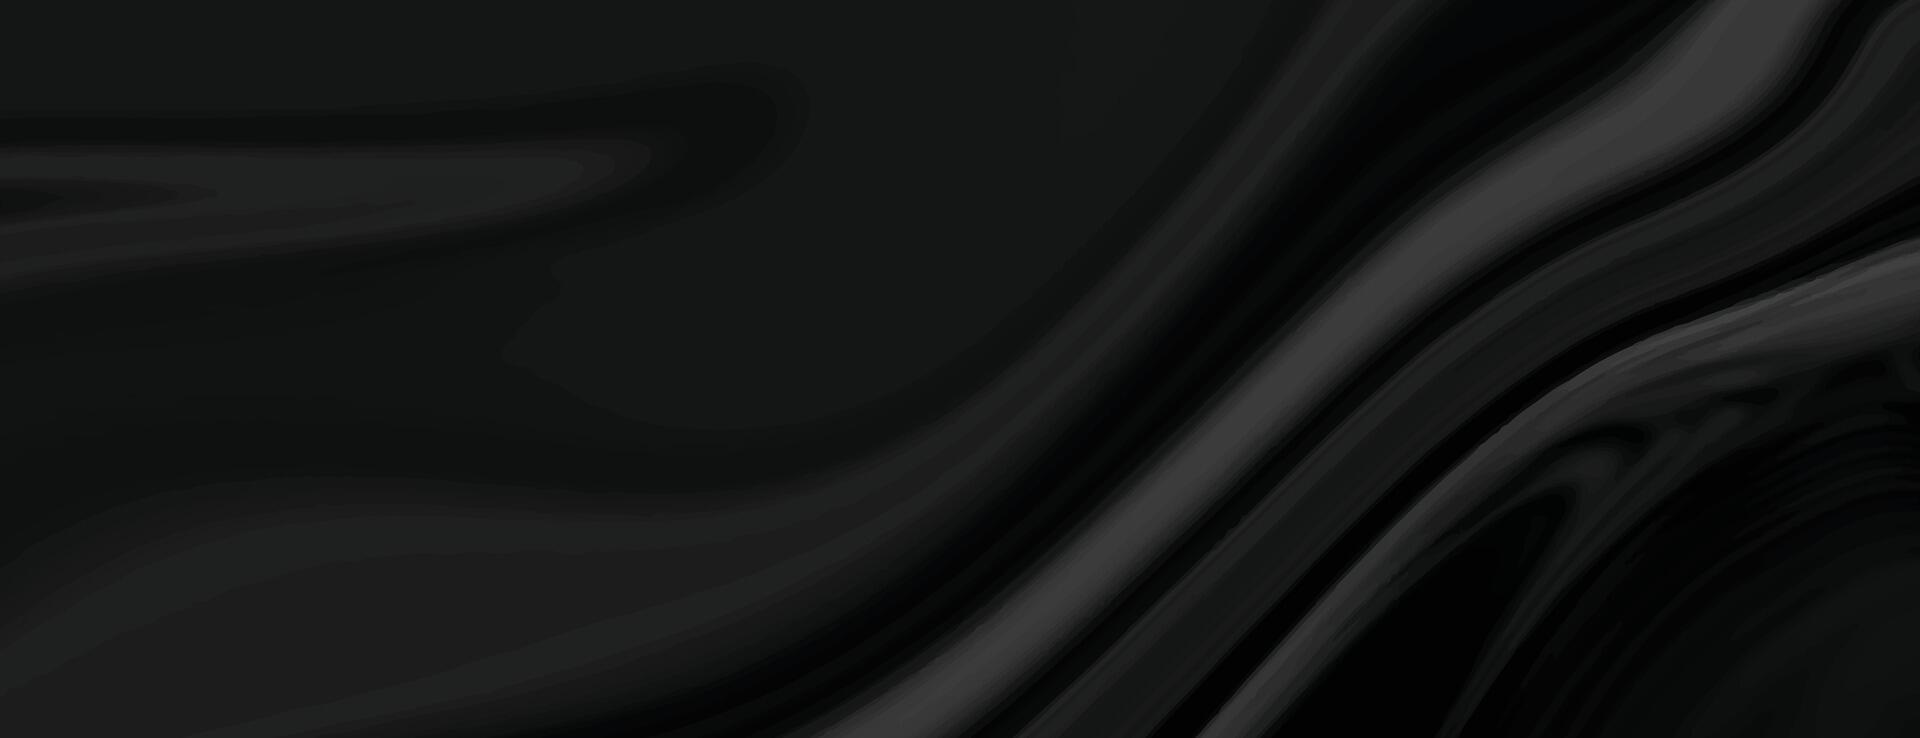 oscuro negro fluido mármol textura fondo de pantalla para moderno fondo vector